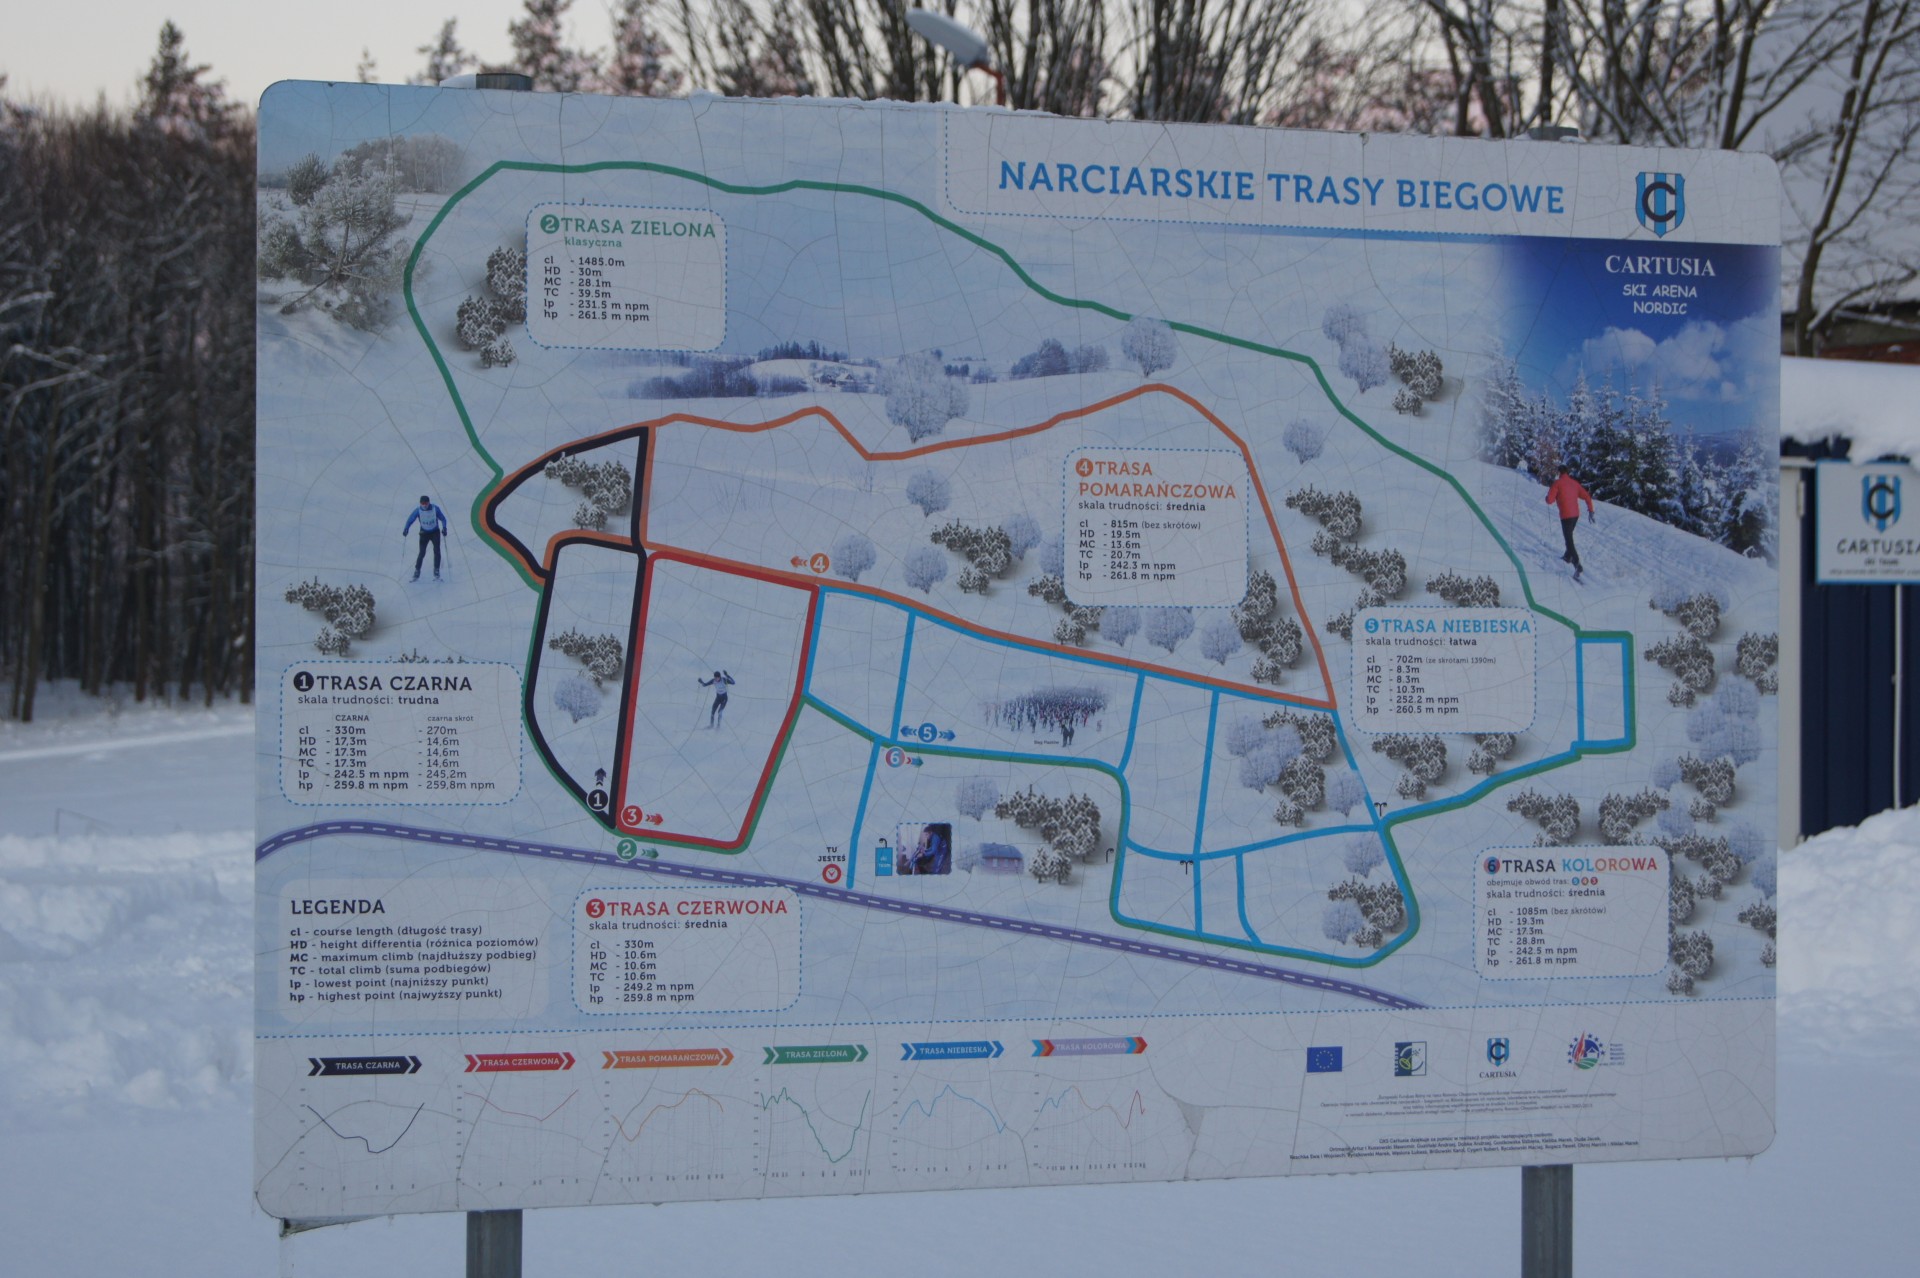 Biegowe trasy narciarskie wokół Kartuz. Fot. Patrycja Momot/Magazyn Kaszuby